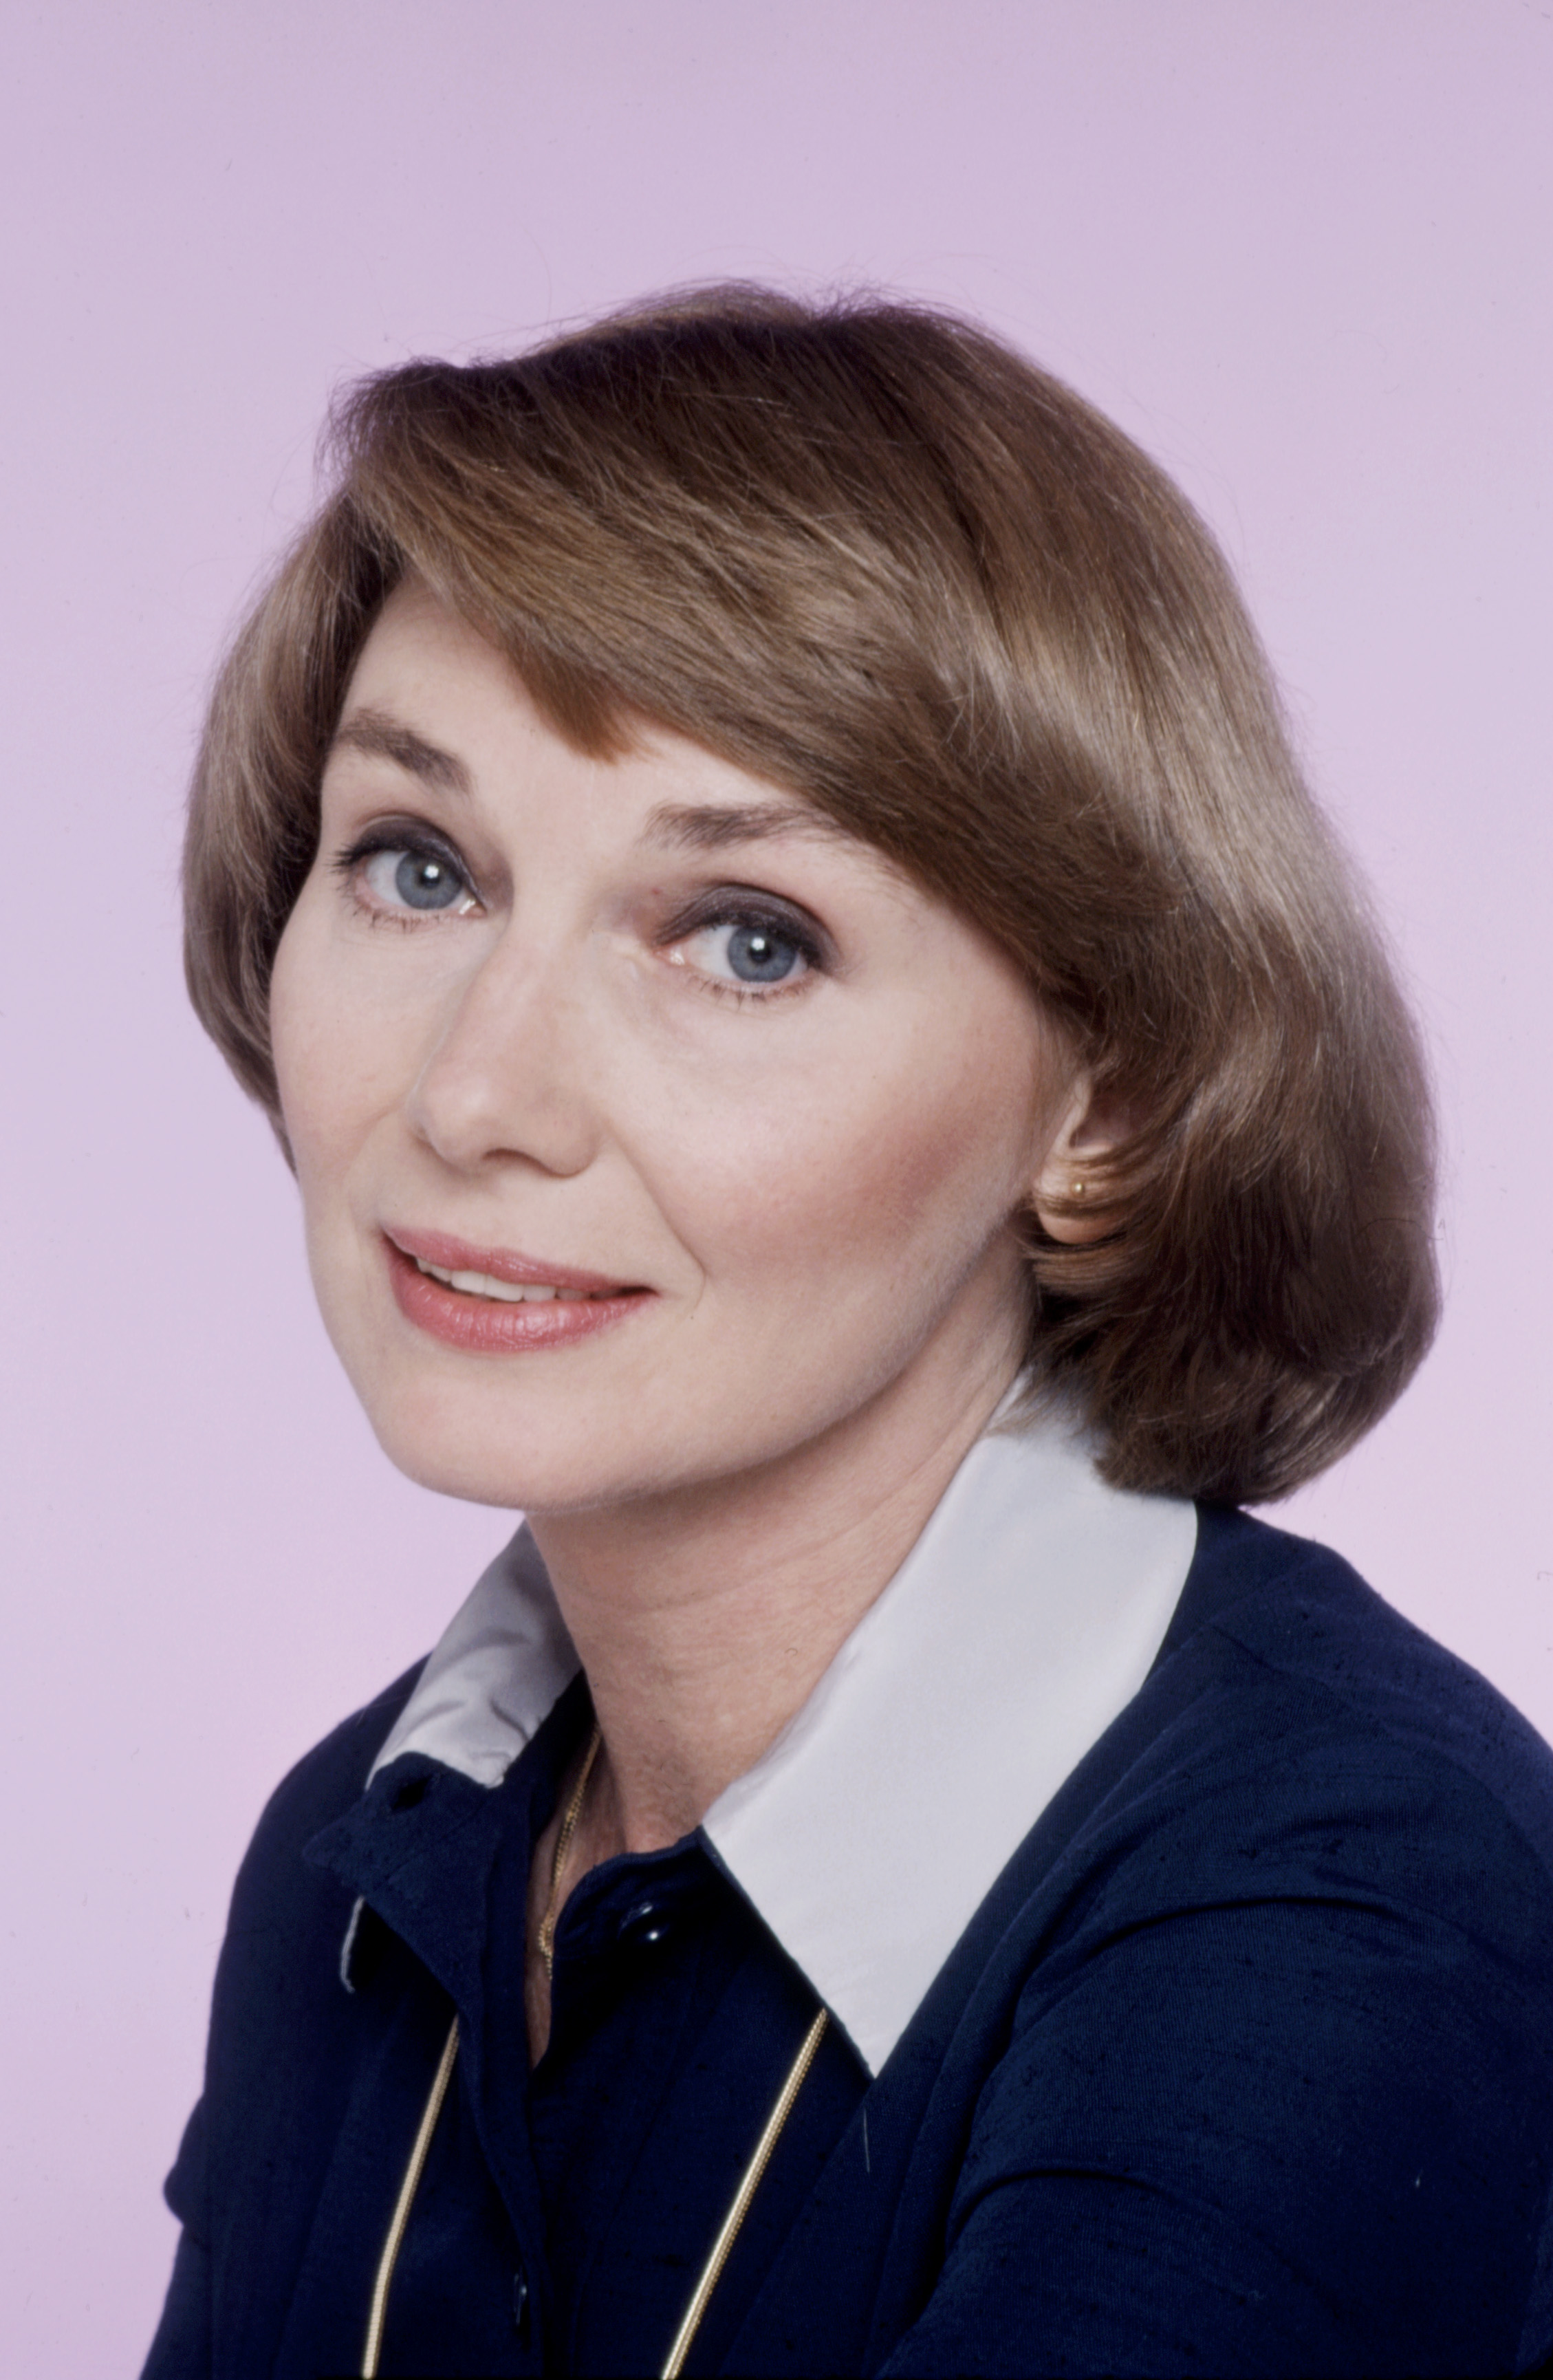 Inga Swenson auf einem Werbefoto für die Fernsehserie "Benson" am 1. Januar 1980 in Los Angeles, Kalifornien | Quelle: Getty Images